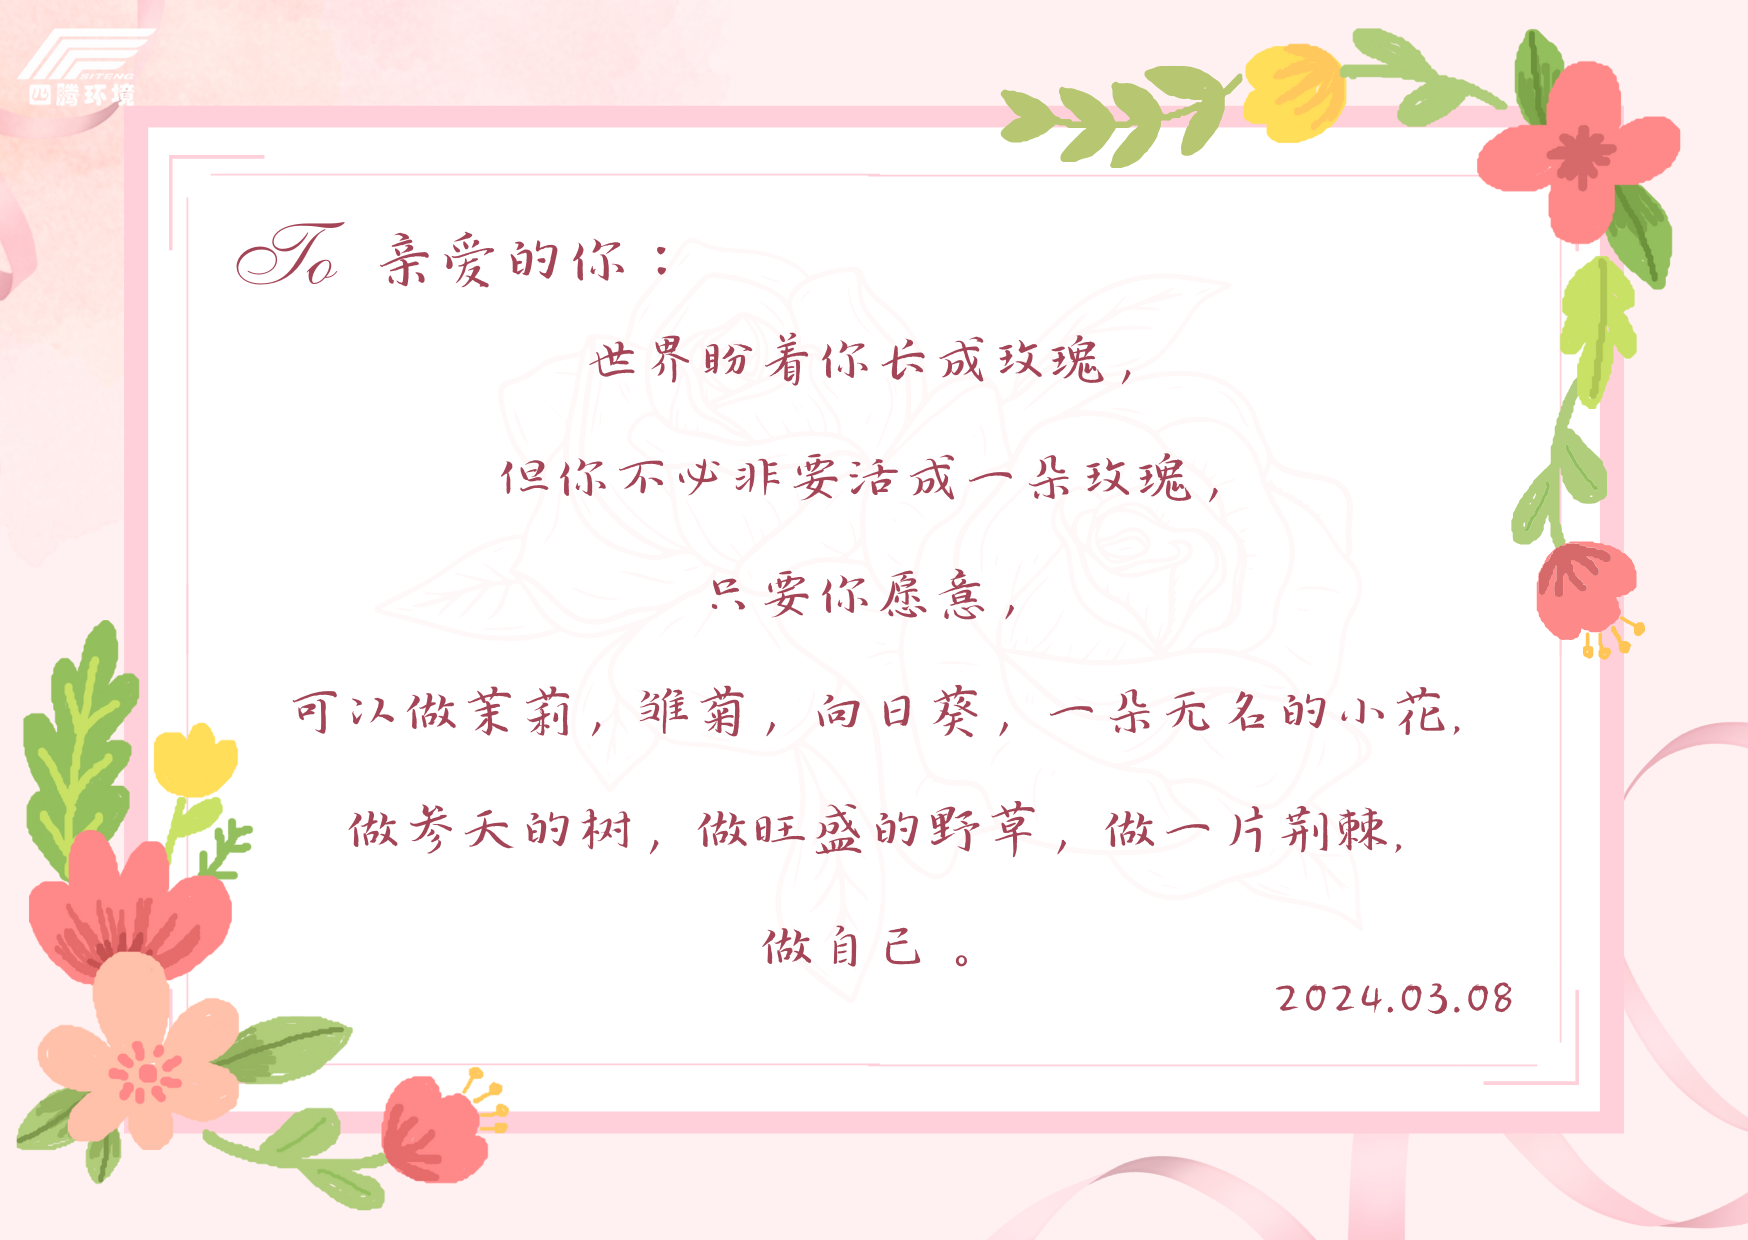 粉白色信件文字妇女节贺卡 (1).png